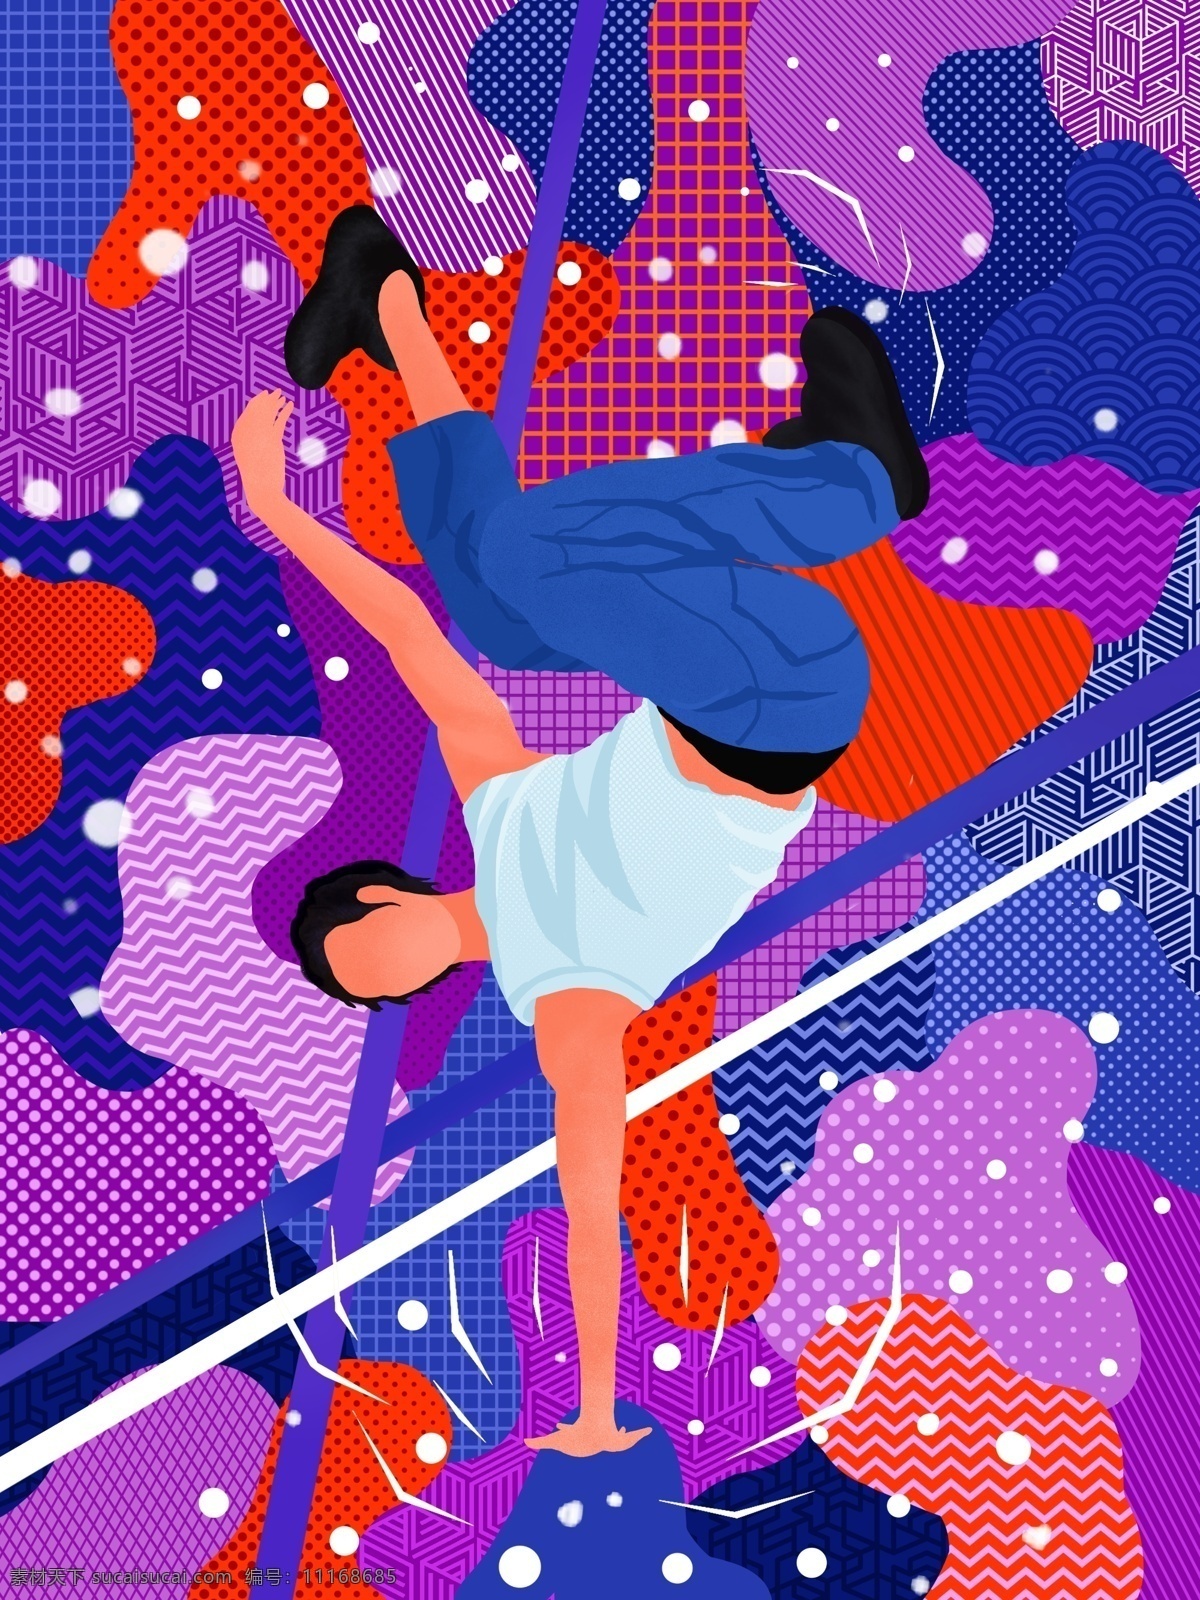 绚丽多彩 游走 梦 运动 系 插画 健身 街舞 抽象 抽象图形 游走的梦 抽象插画 微信用图